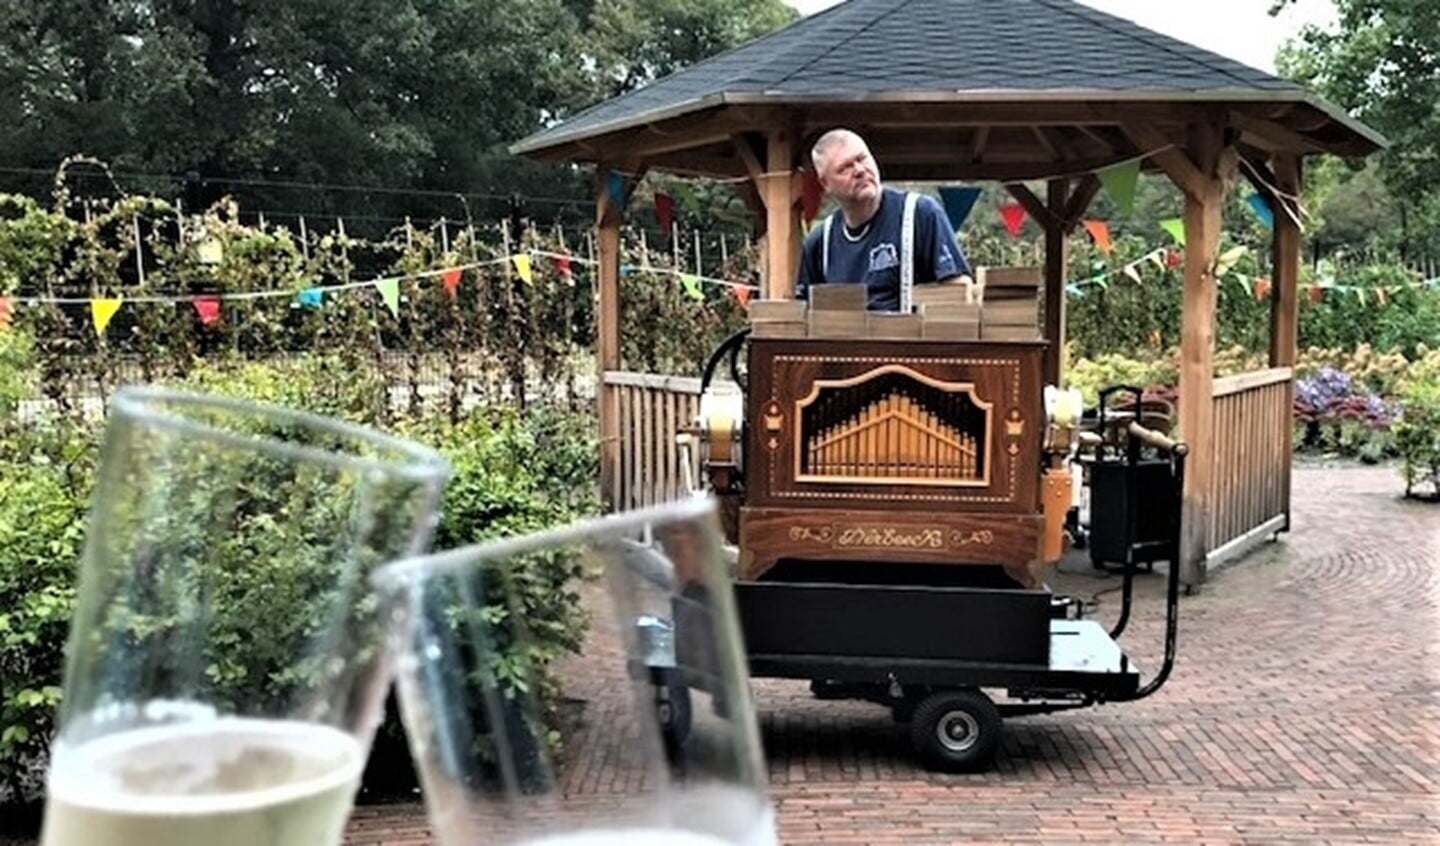 Maandag 28 september, gezamenlijk proosten op het 1 jarig bestaan van WZH Vliethof in de aangrenzende tuin met draaiorgelmuziek en champagne (foto: pr).